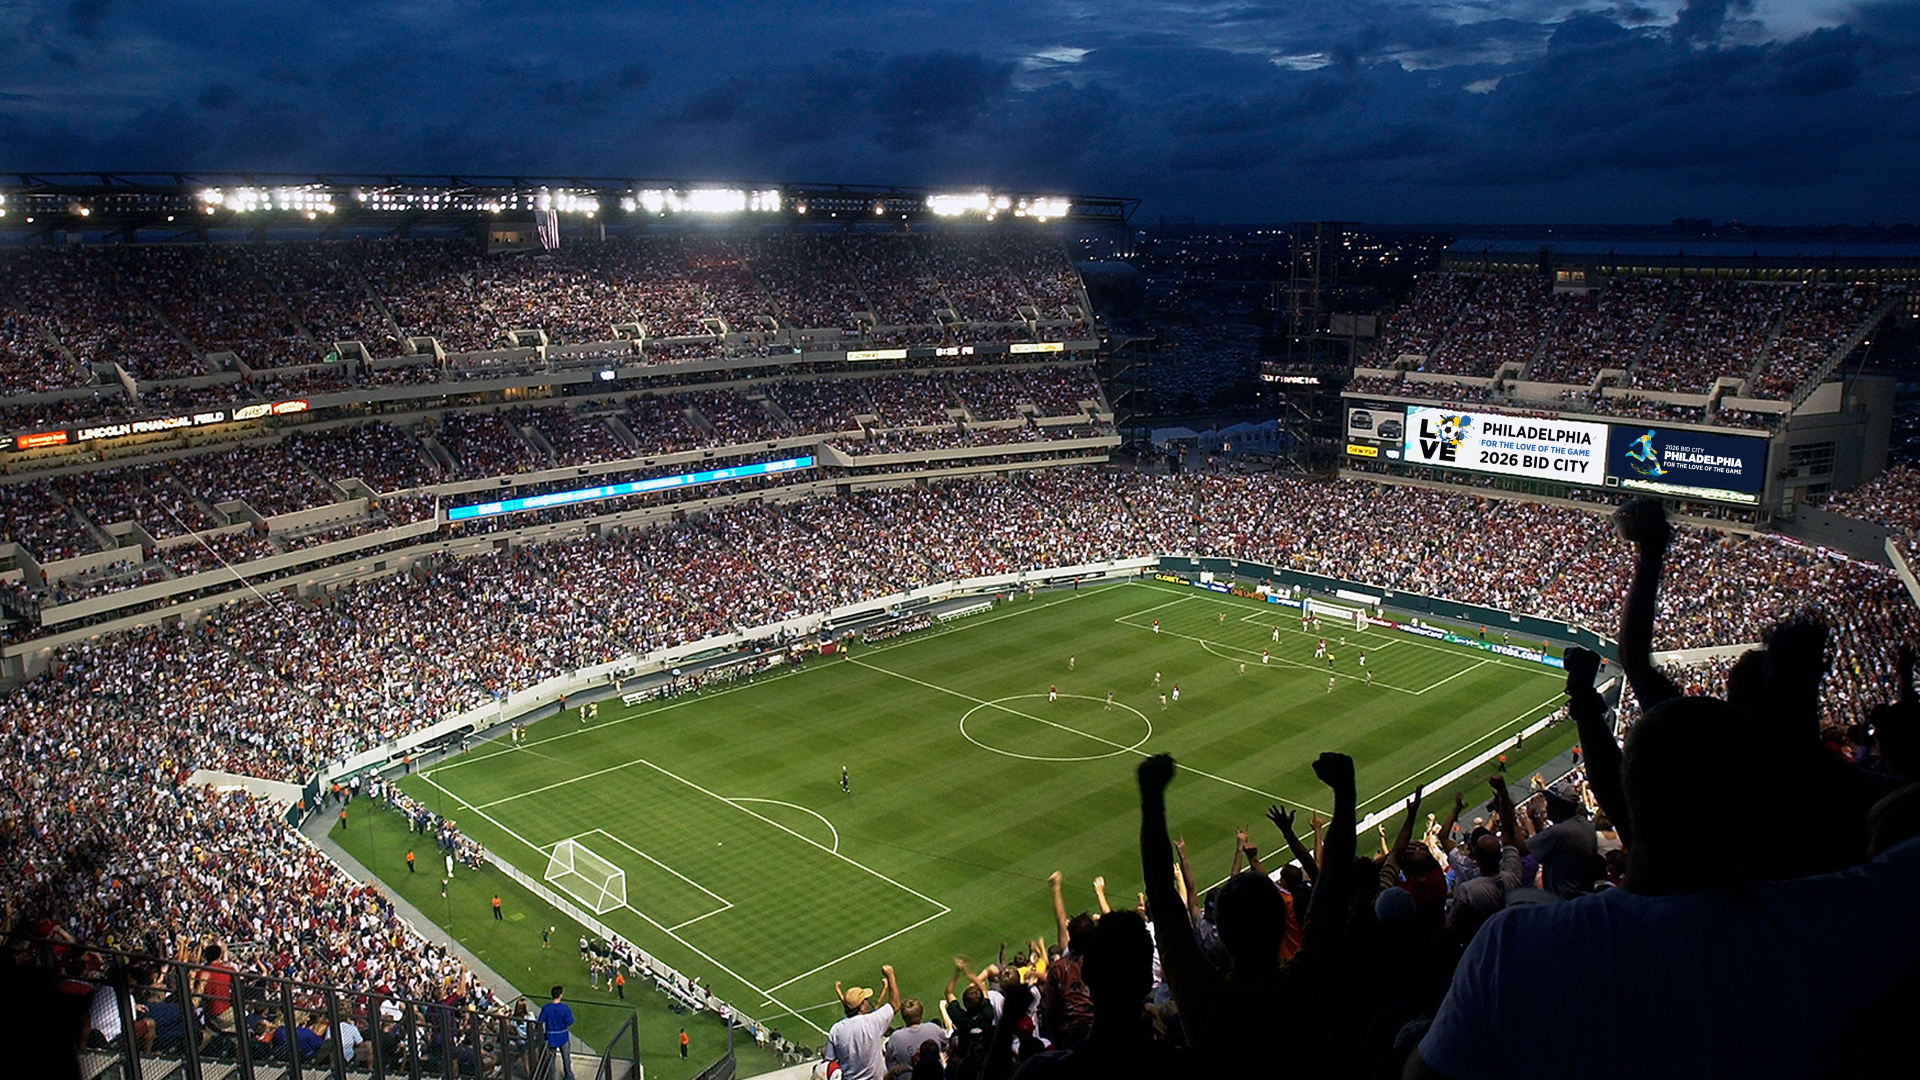 اختيار فيلادلفيا 2026 المدينة المضيفة لكأس العالم FIFA – CBS Philly